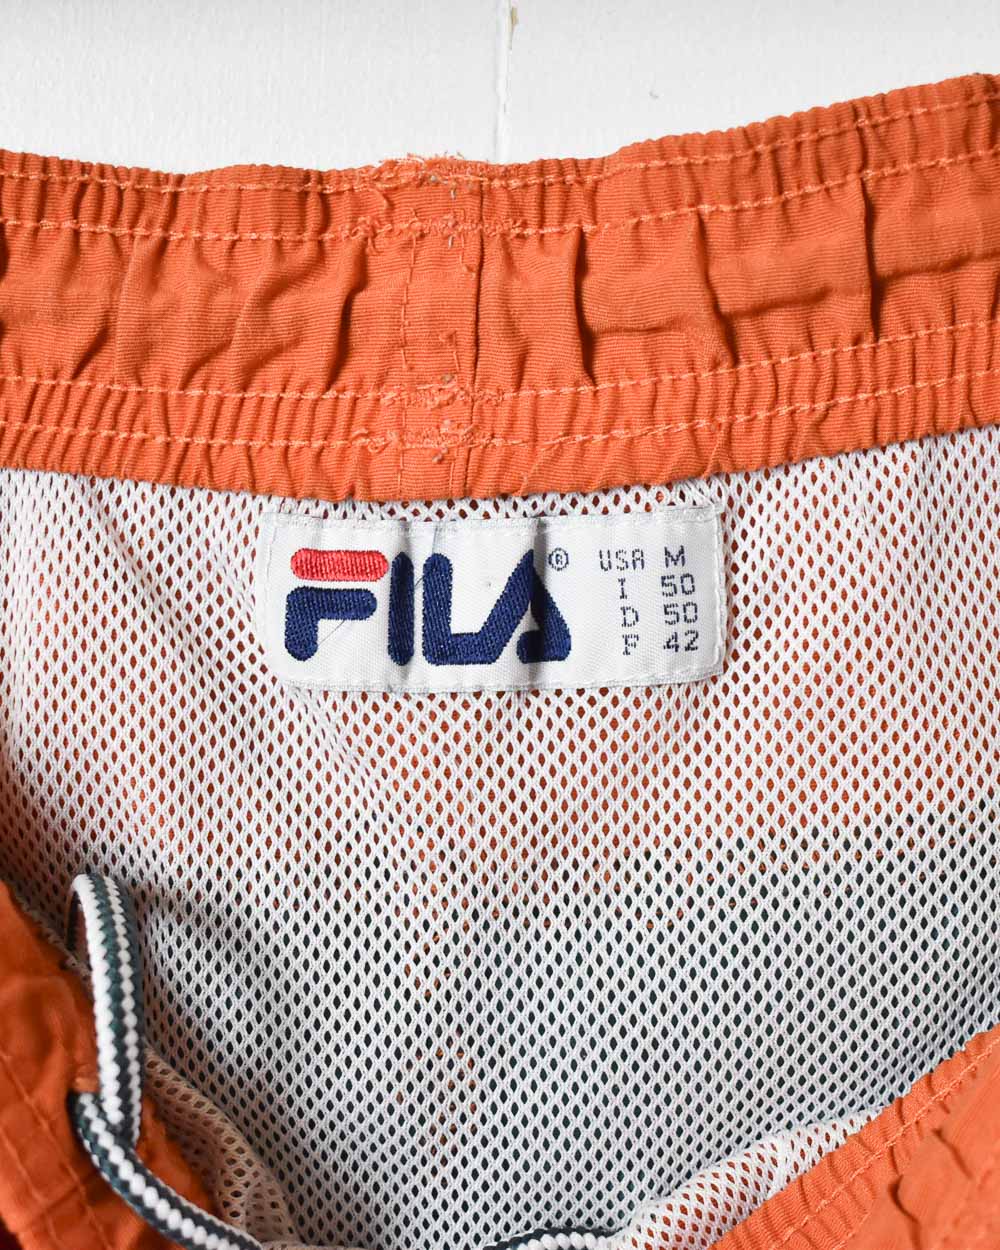 Orange Fila Mesh Shorts - Medium